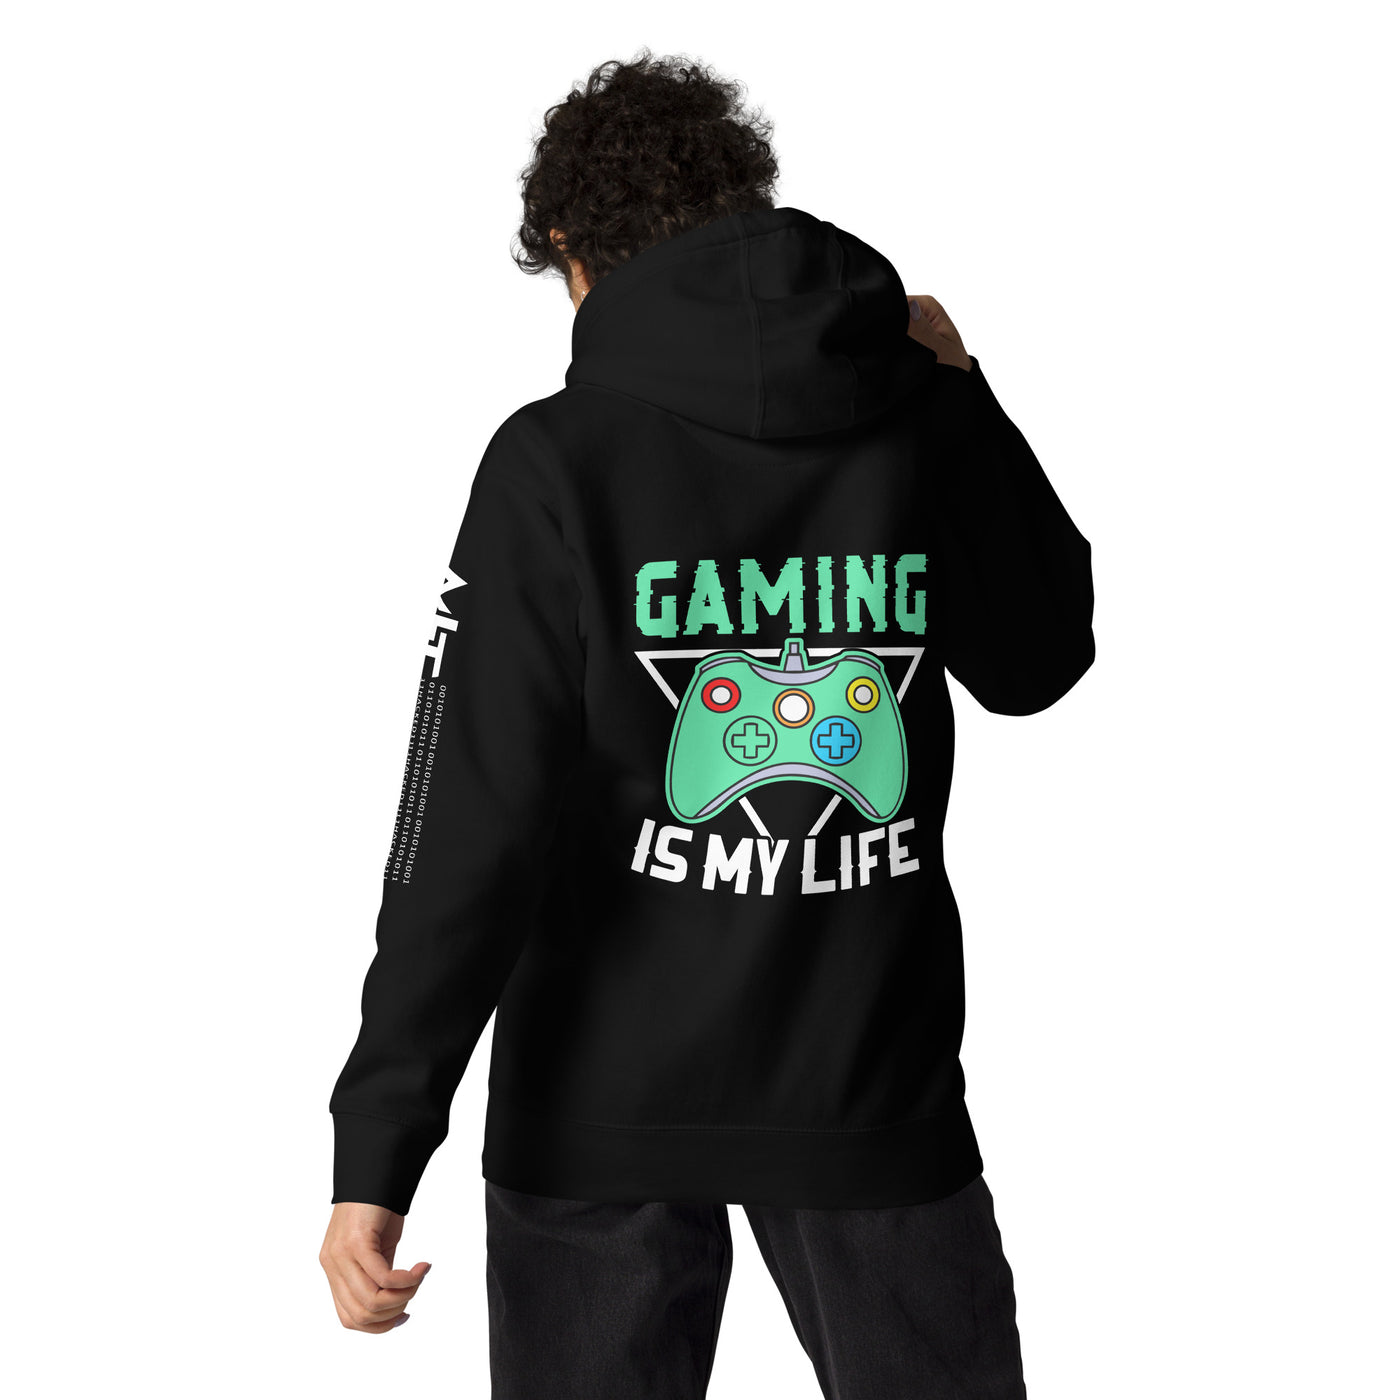 Gaming Is My Life - Unisex Hoodie  (Back print)